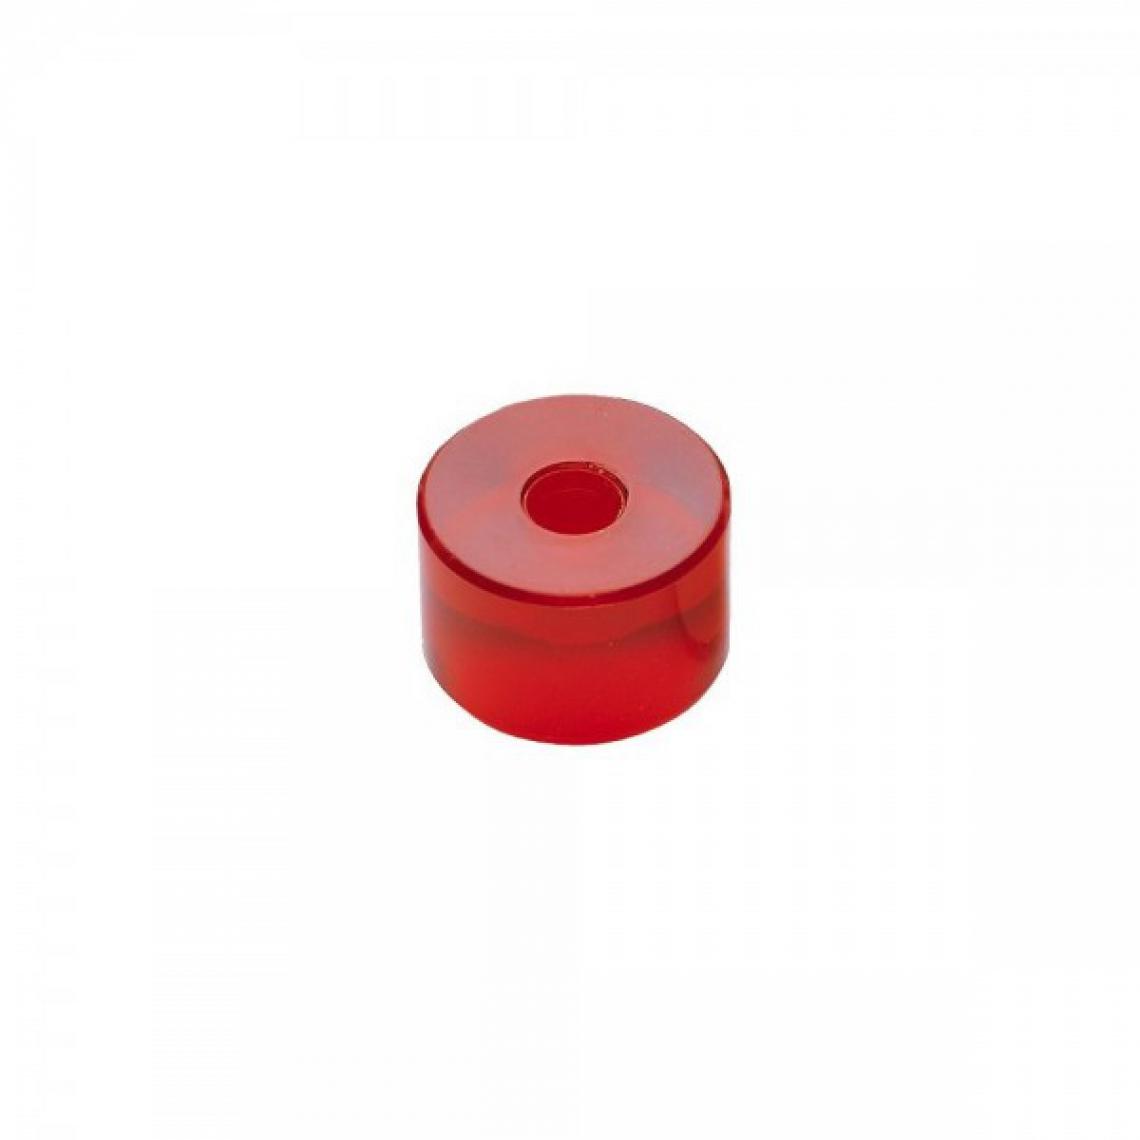 Facom - Embout TPU de rechange rouge 60mm pour massette - Packs d'outillage électroportatif